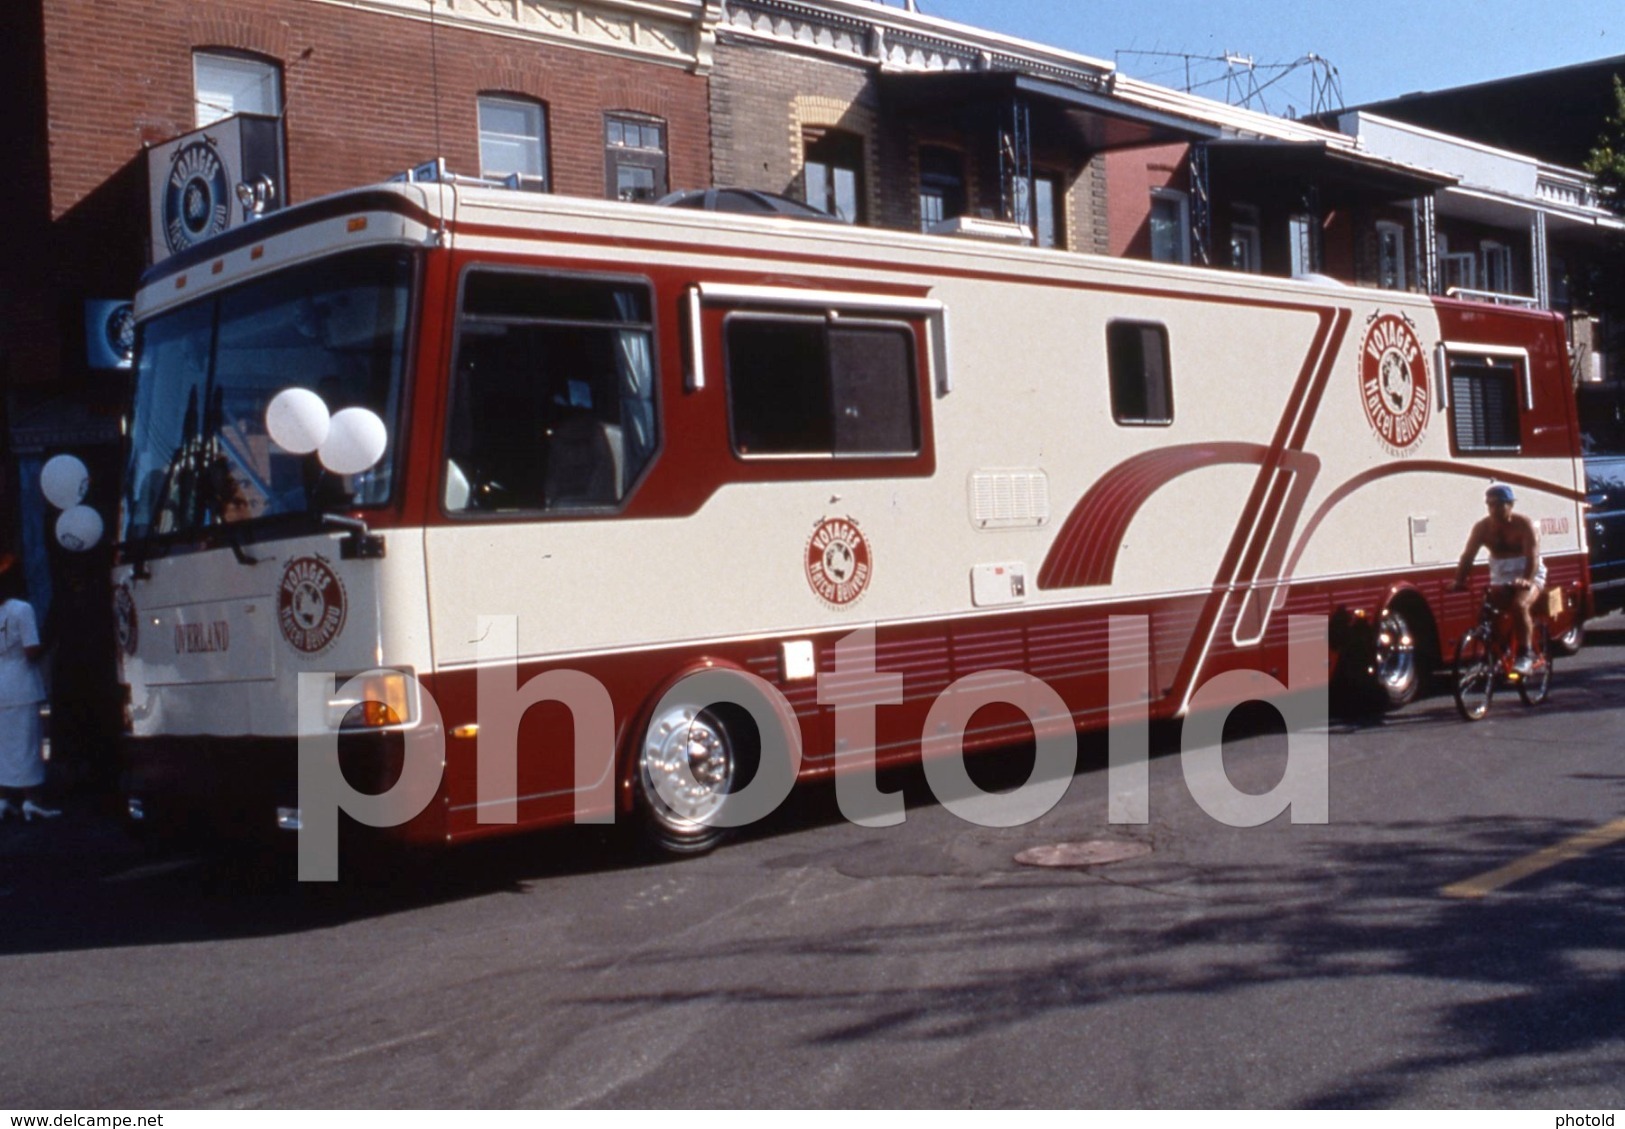 1994 MARCEL BELIVEAU AGENCE VOYAGE BUS AUTOBUS CANADA 35mm PRESS DIAPOSITIVE SLIDE Not PHOTO No FOTO B4919 - Dias